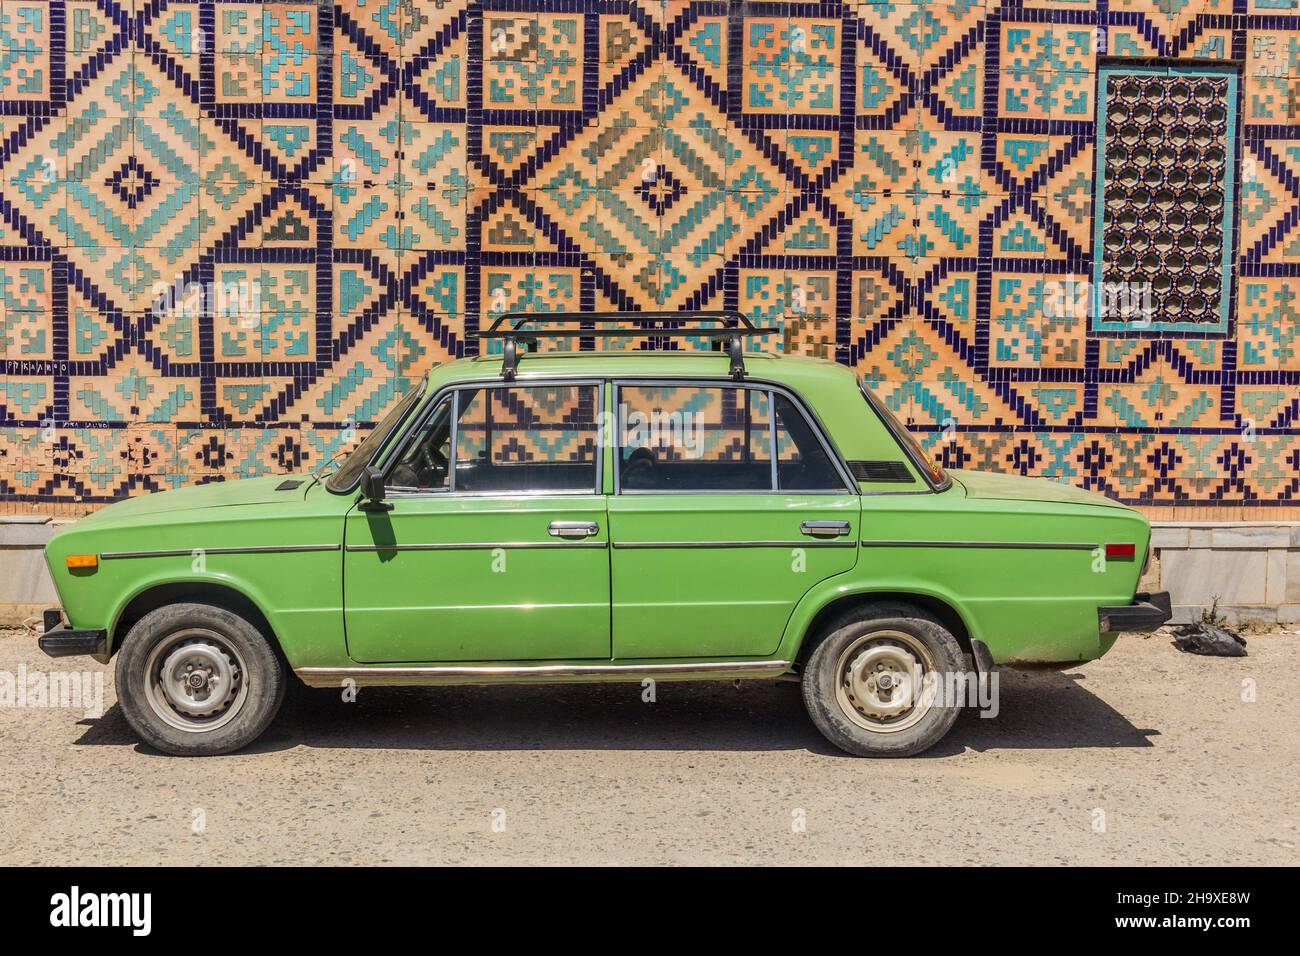 MARGILAN, Usbekistan - 21 AUGUST: Alte Lada Auto mit Besen zum